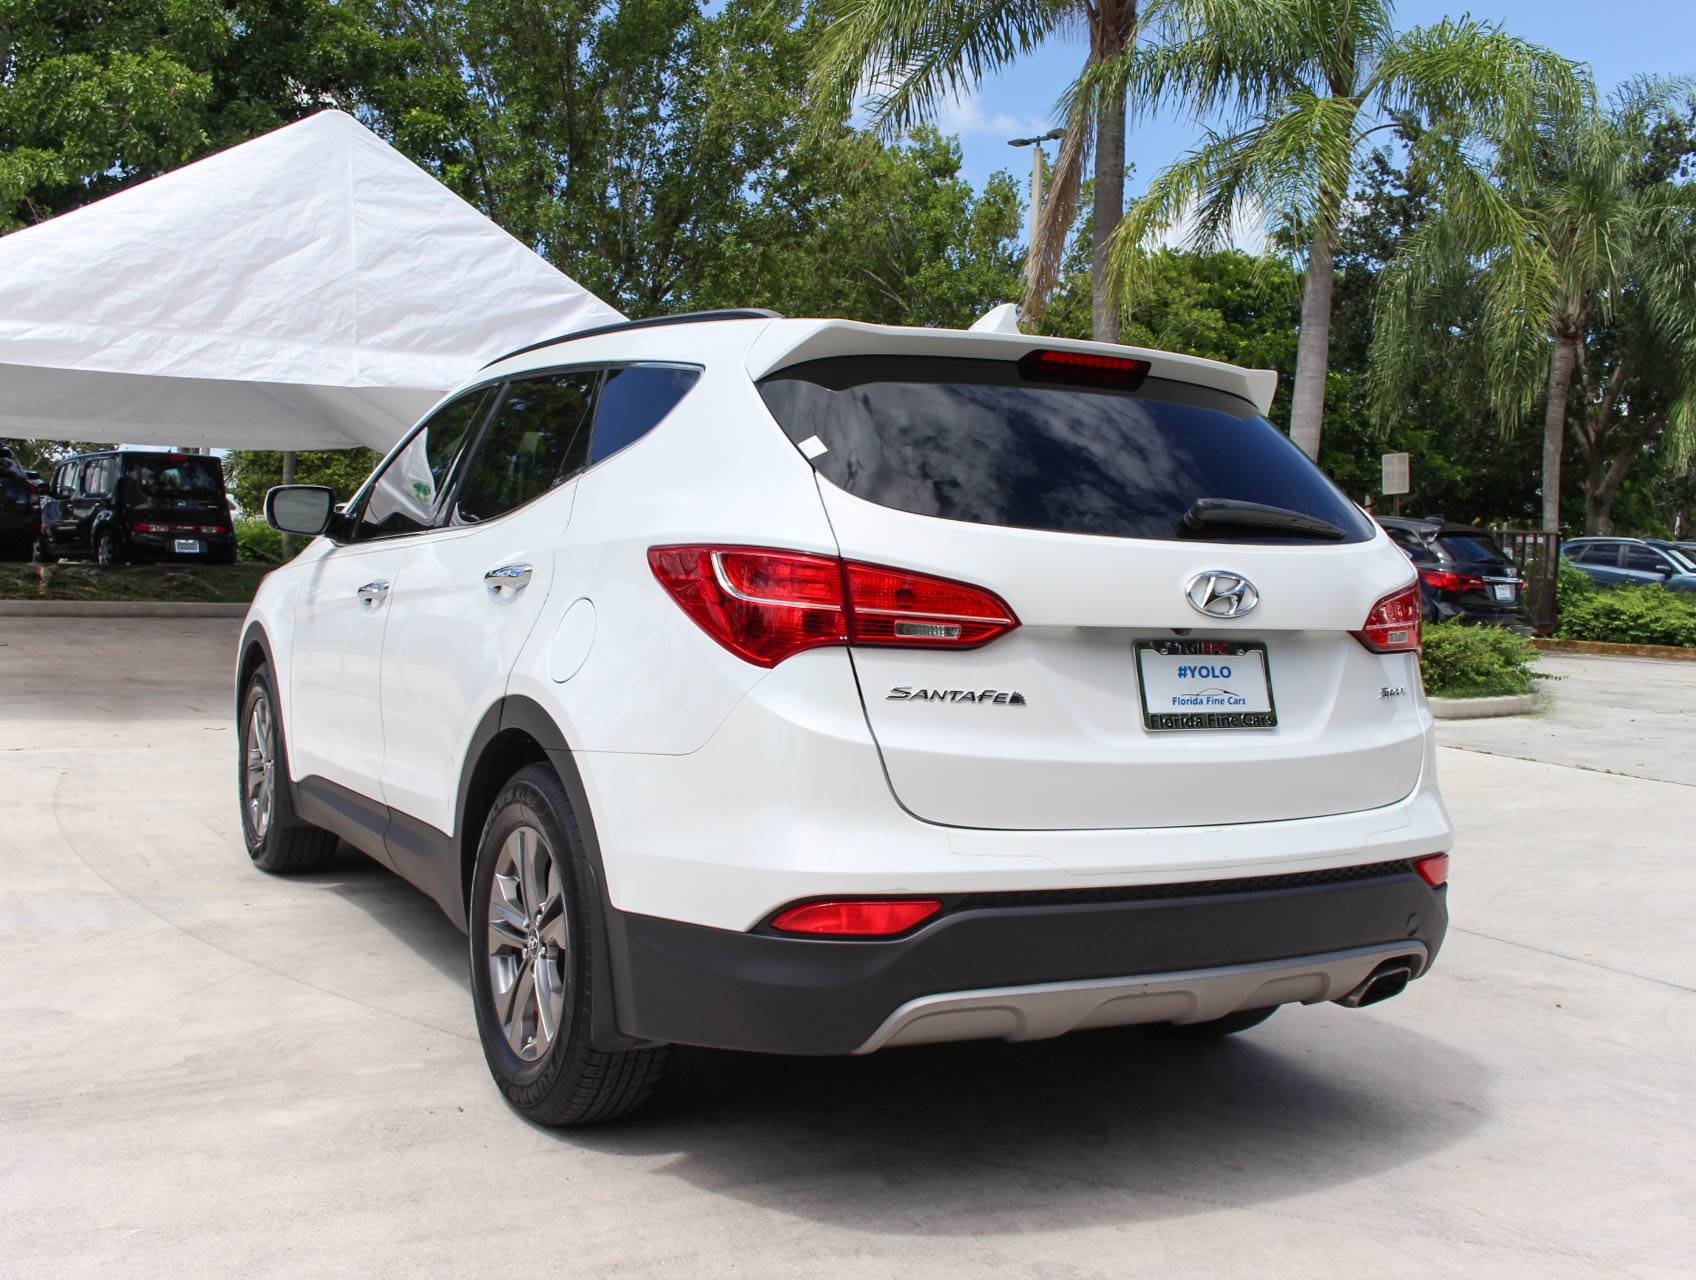 Florida Fine Cars - Used HYUNDAI SANTA FE SPORT 2014 MARGATE BASE